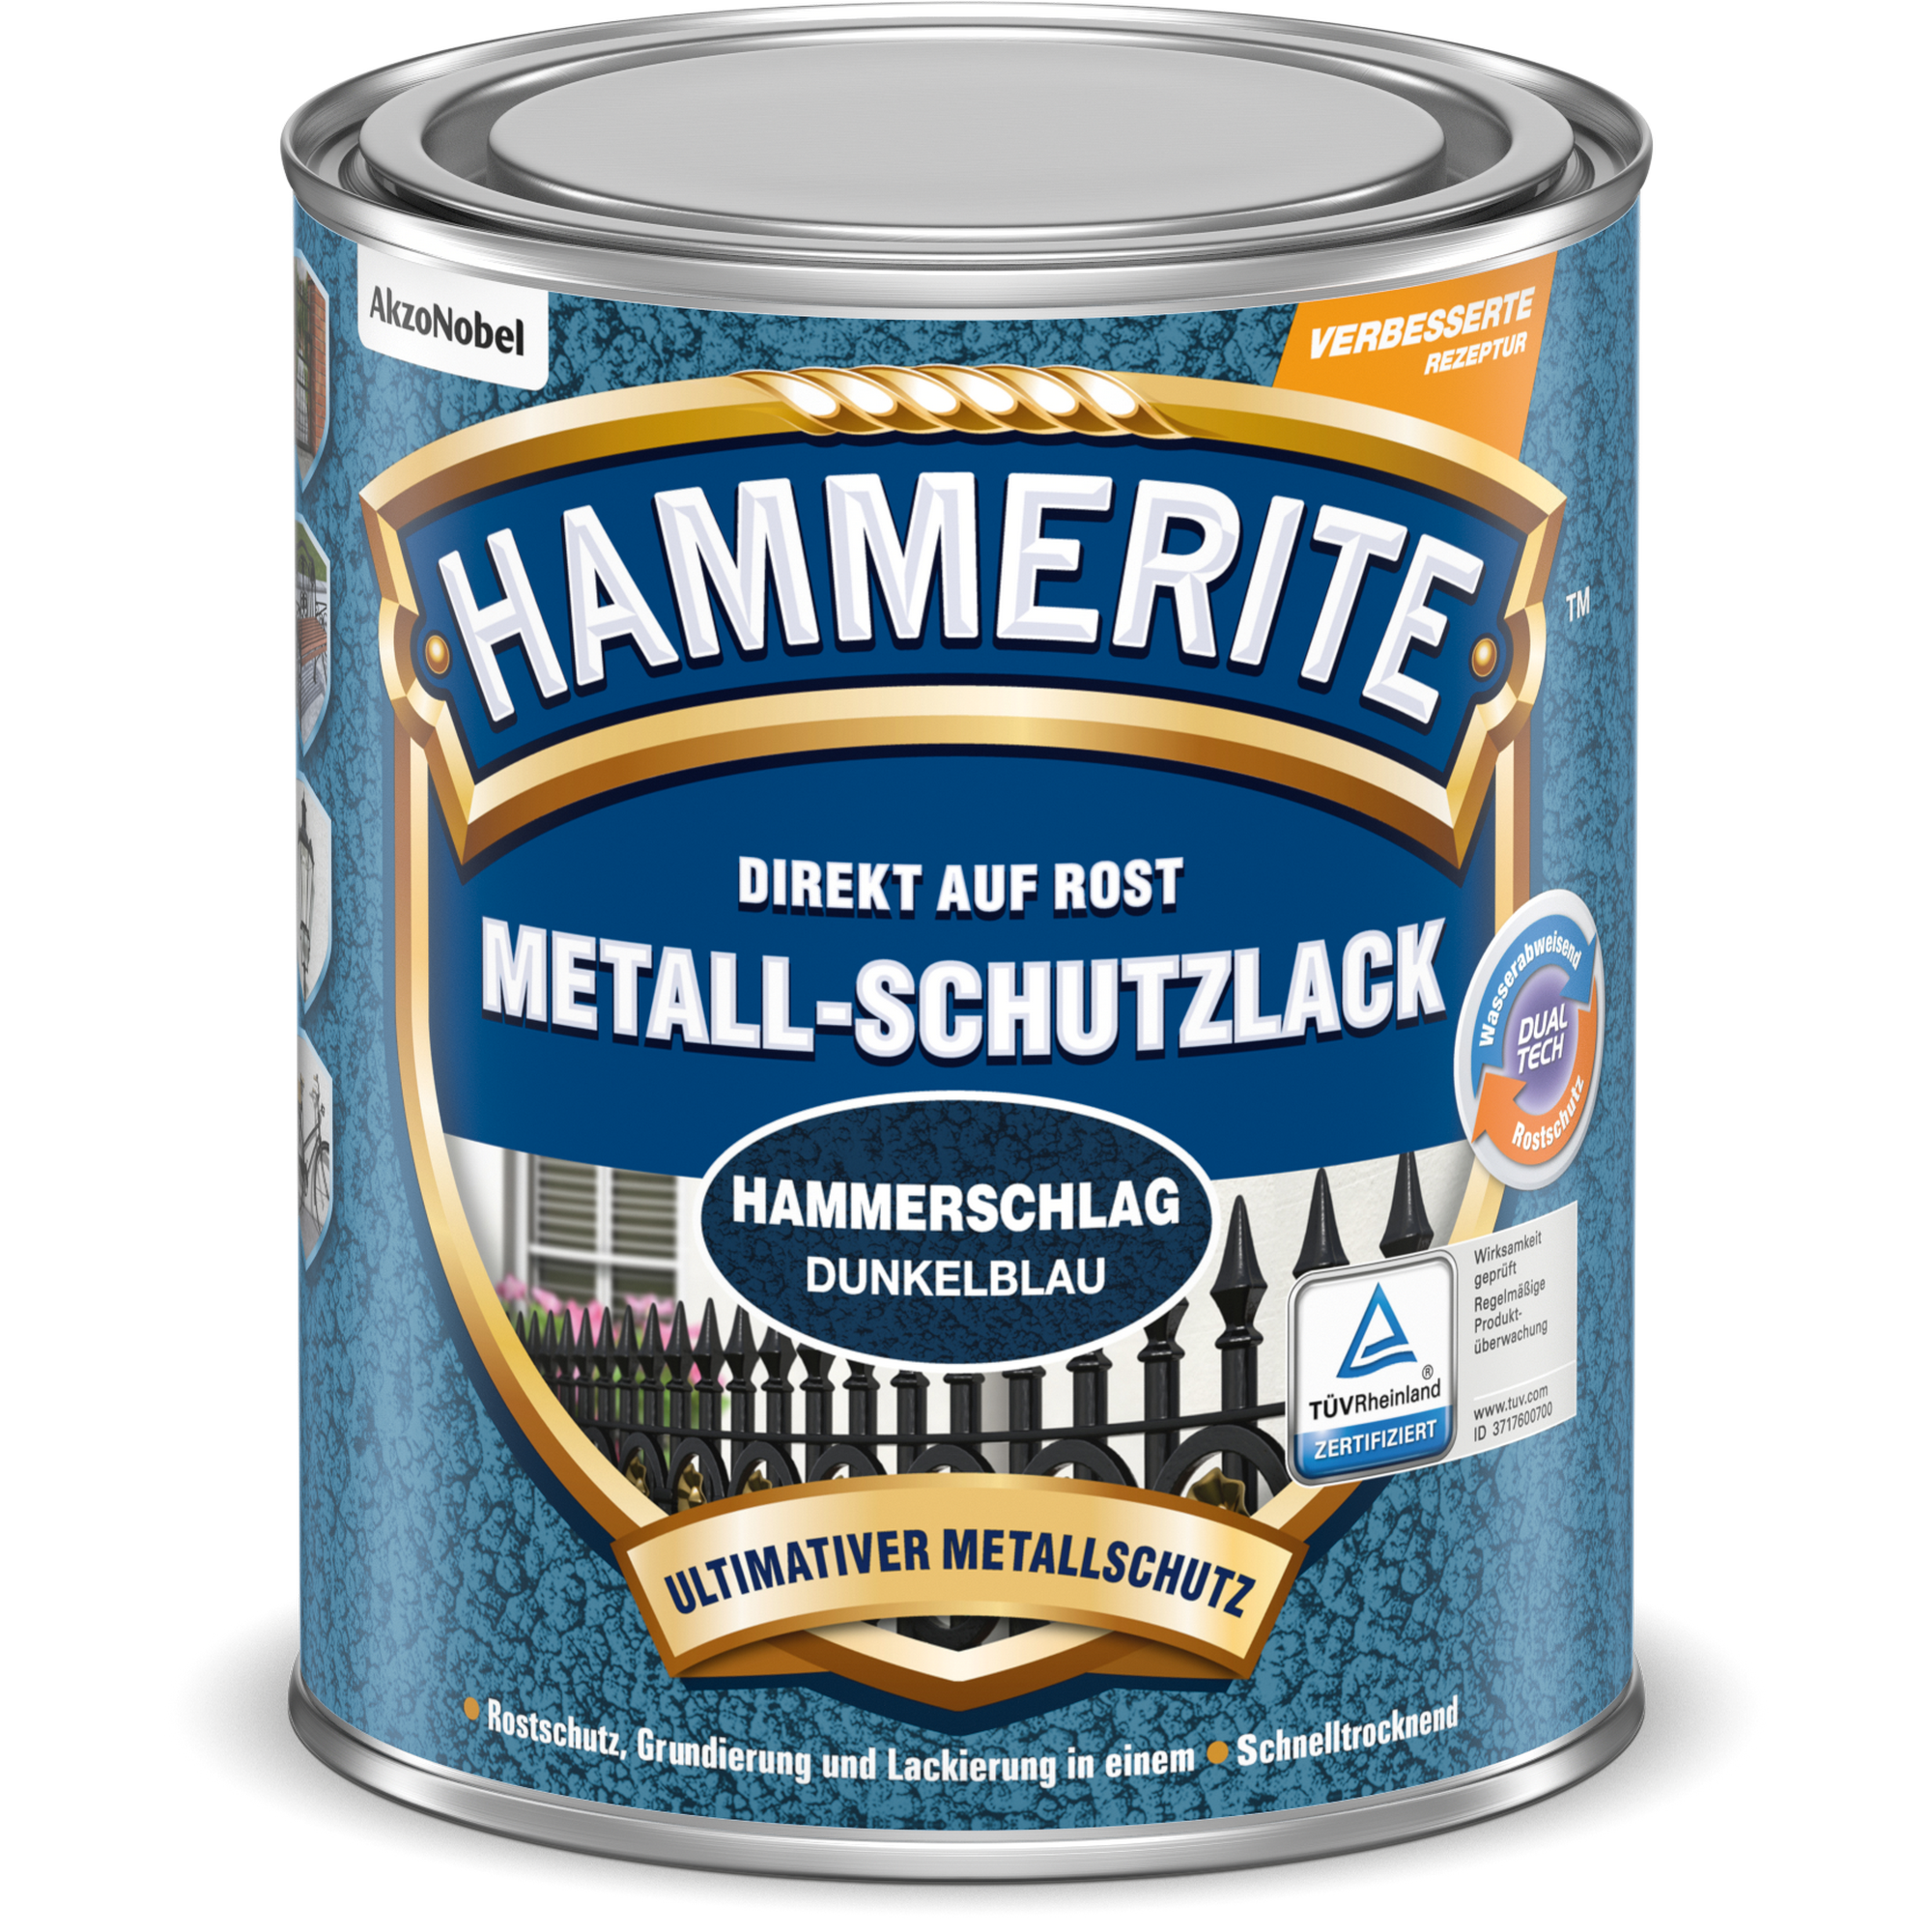 Metallschutzlack Hammerschlag-Effekt dunkelblau 750 ml + product picture